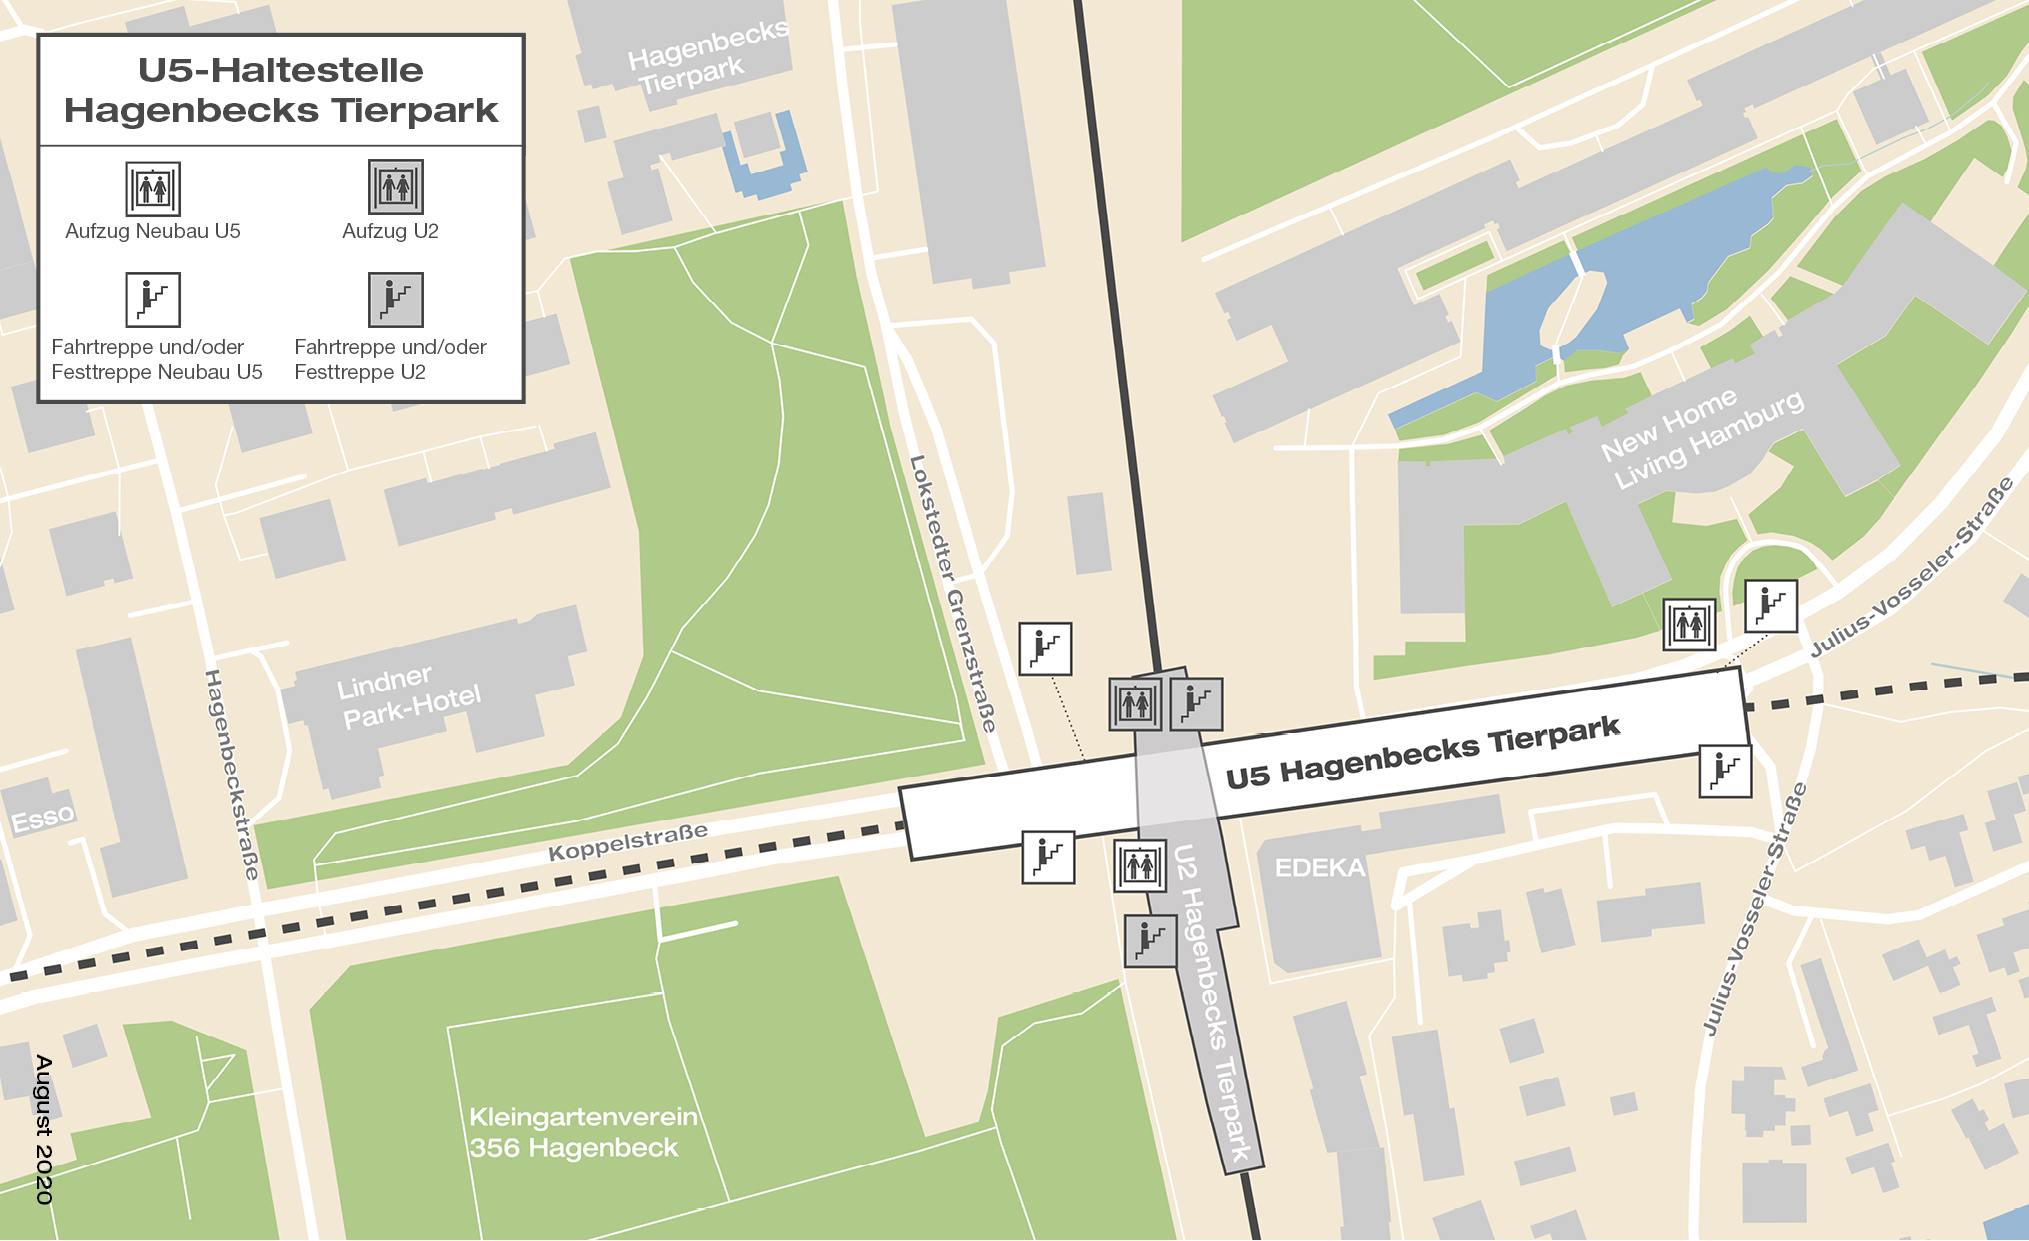 Voraussichtliche Lage des Haltestellenkörpers der geplanten  U5-Haltestelle Hagenbecks Tierpark, nahe der bestehenden U2 Hagenbecks Tierpark.